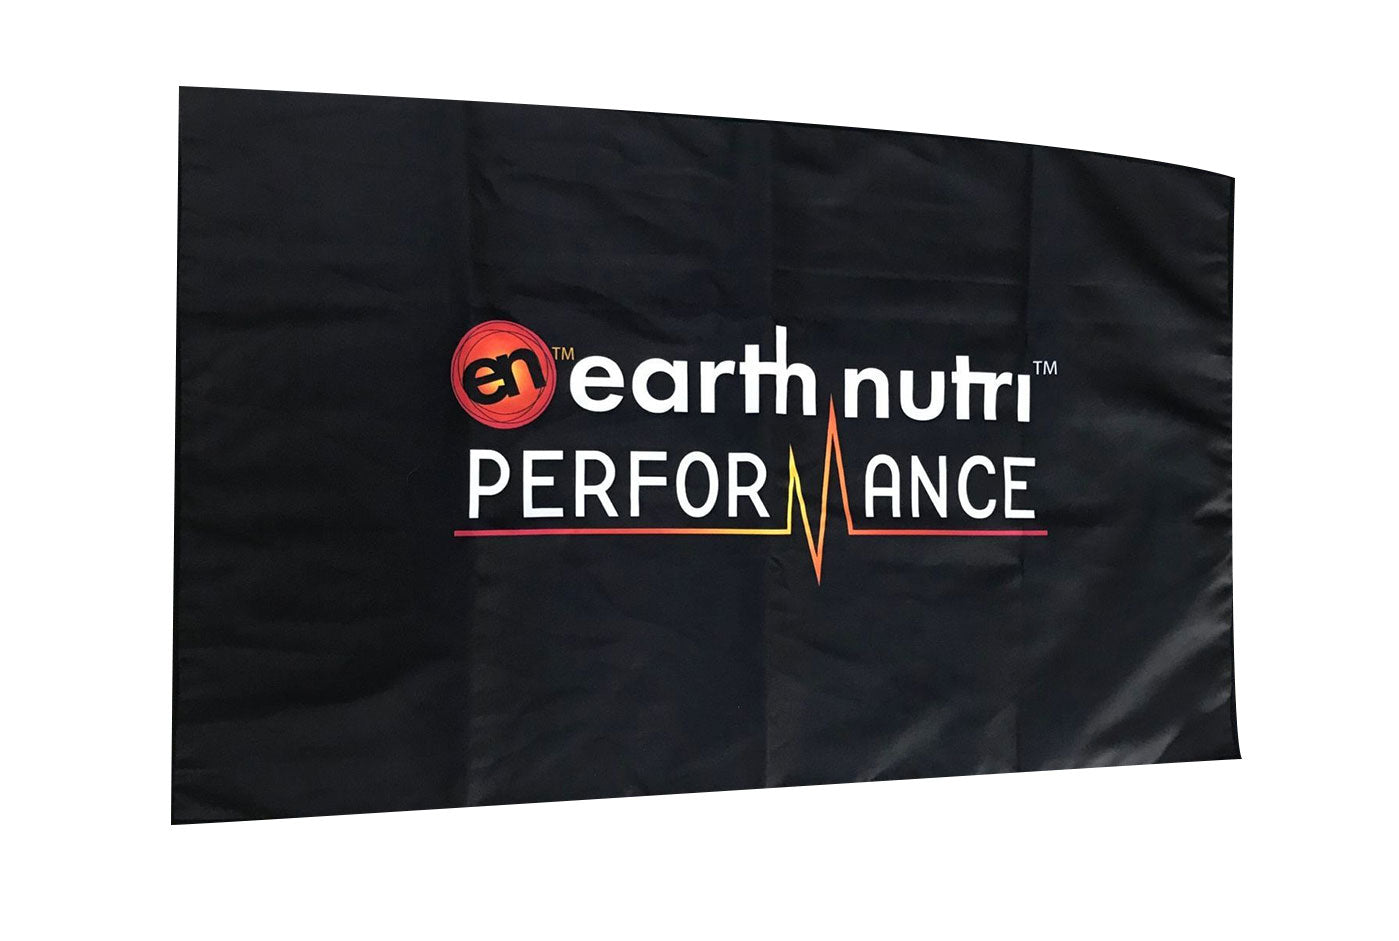 EarthNutri Stainless Steel Protein Shaker from EarthNutri